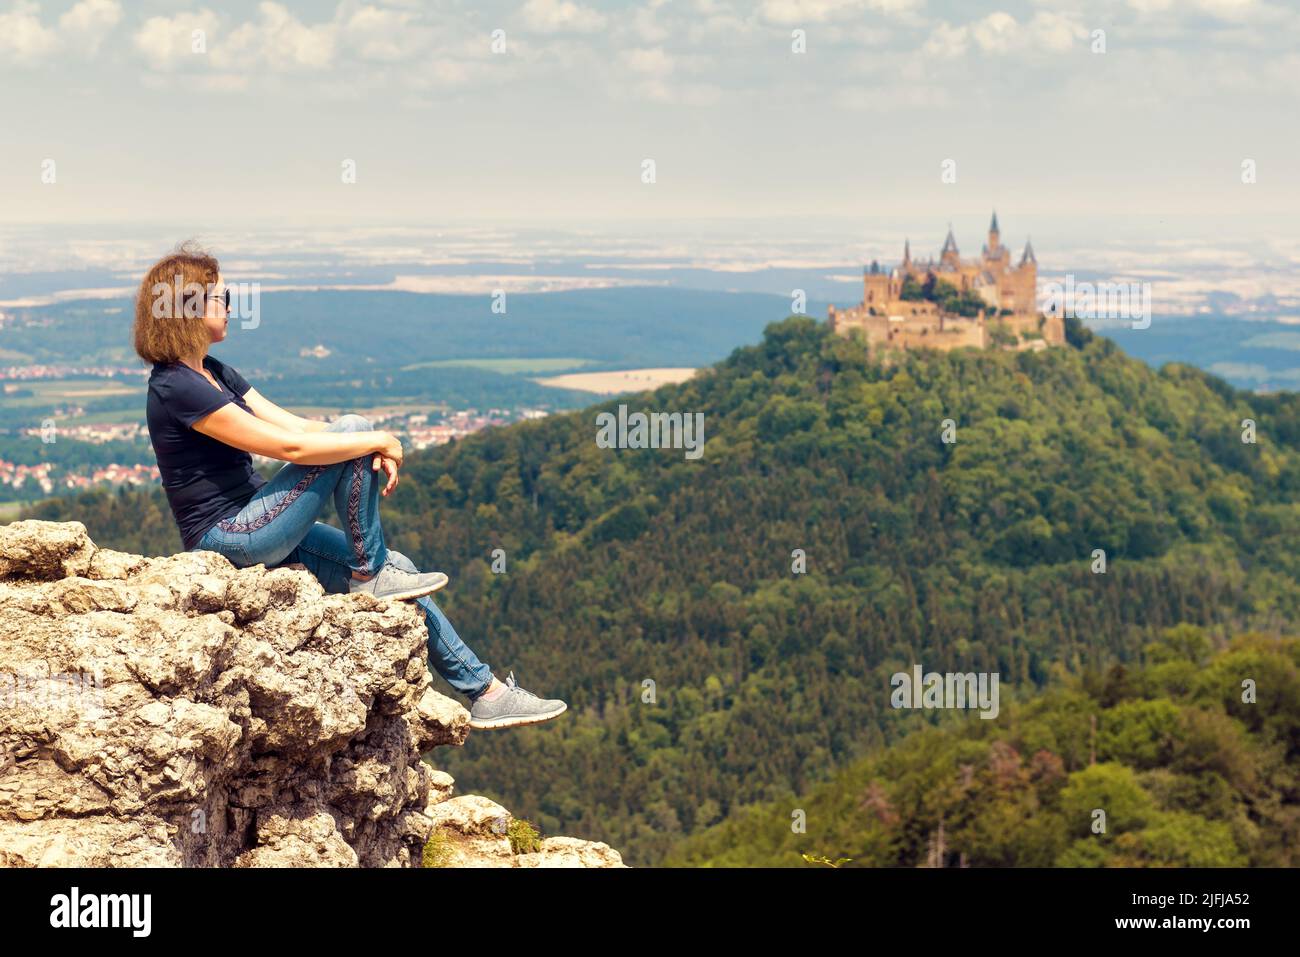 Die auf einer Klippe sitzende Touristenattraktion blickt auf die Burg Hohenzollern auf der Bergspitze, Deutschland. Frau reist im Sommer in die Schwäbischen Alpen. Konzept der Wandermenschen Stockfoto